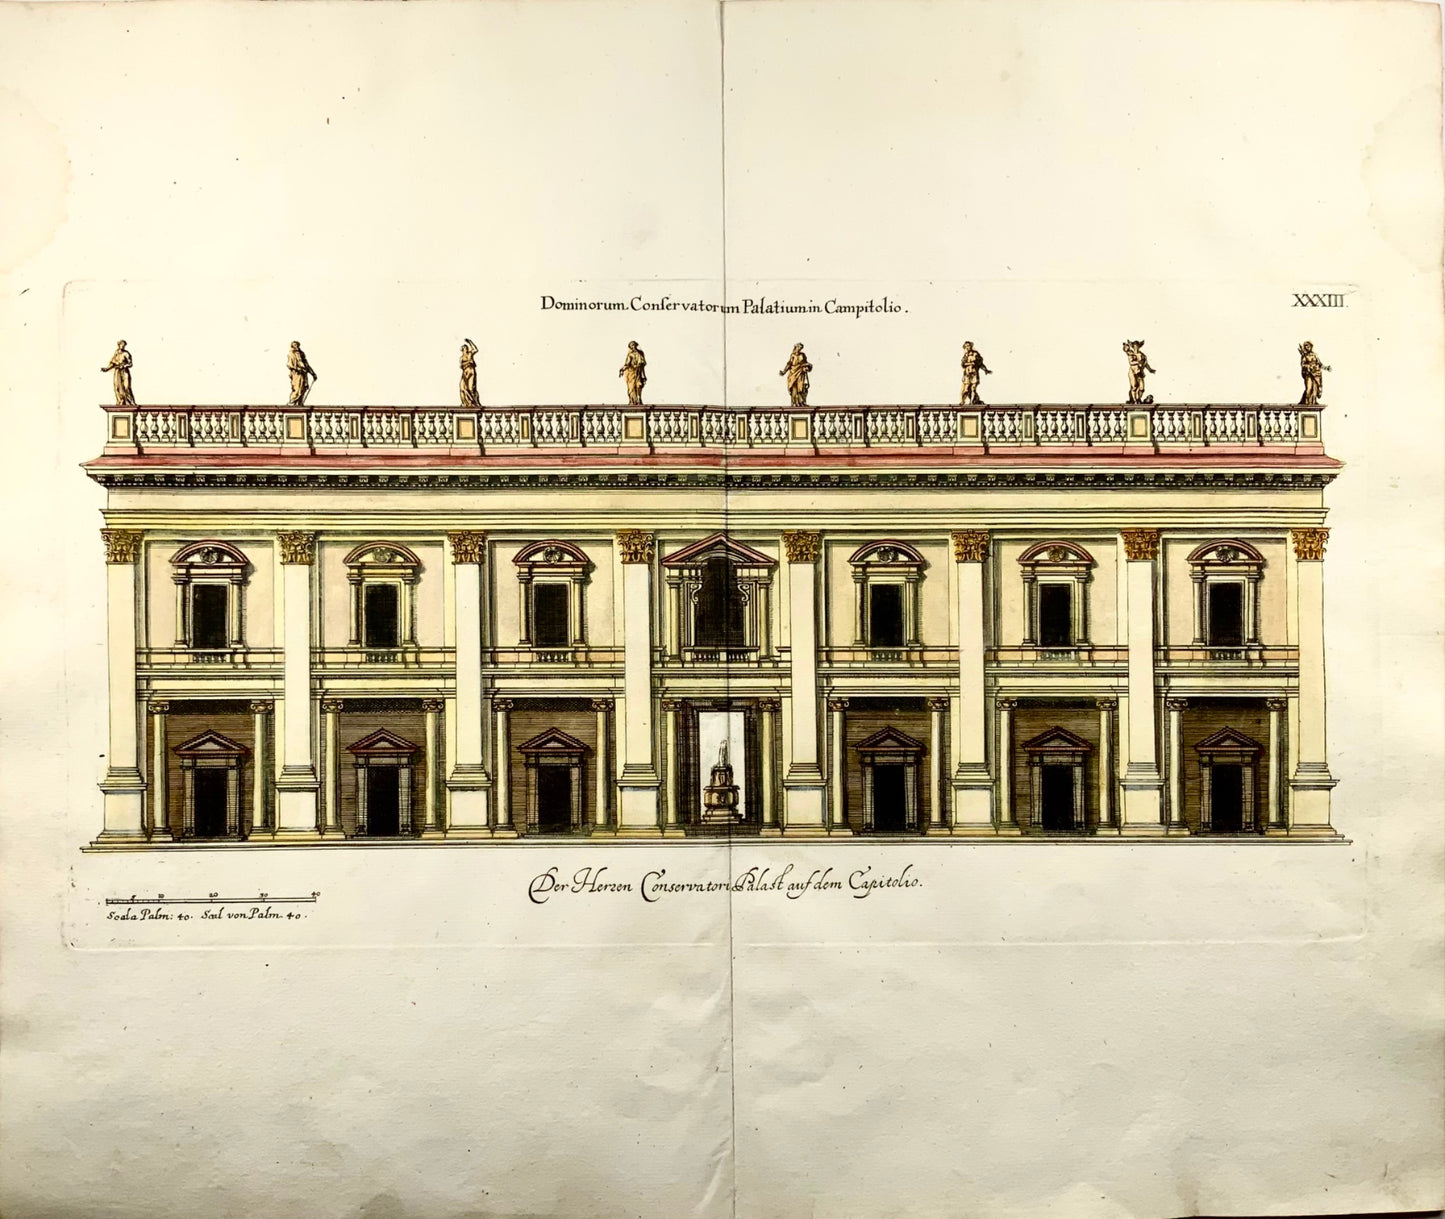 1679 Palazzo dei Conservatori, Rome, Italy, Sandrart, hand colored double folio